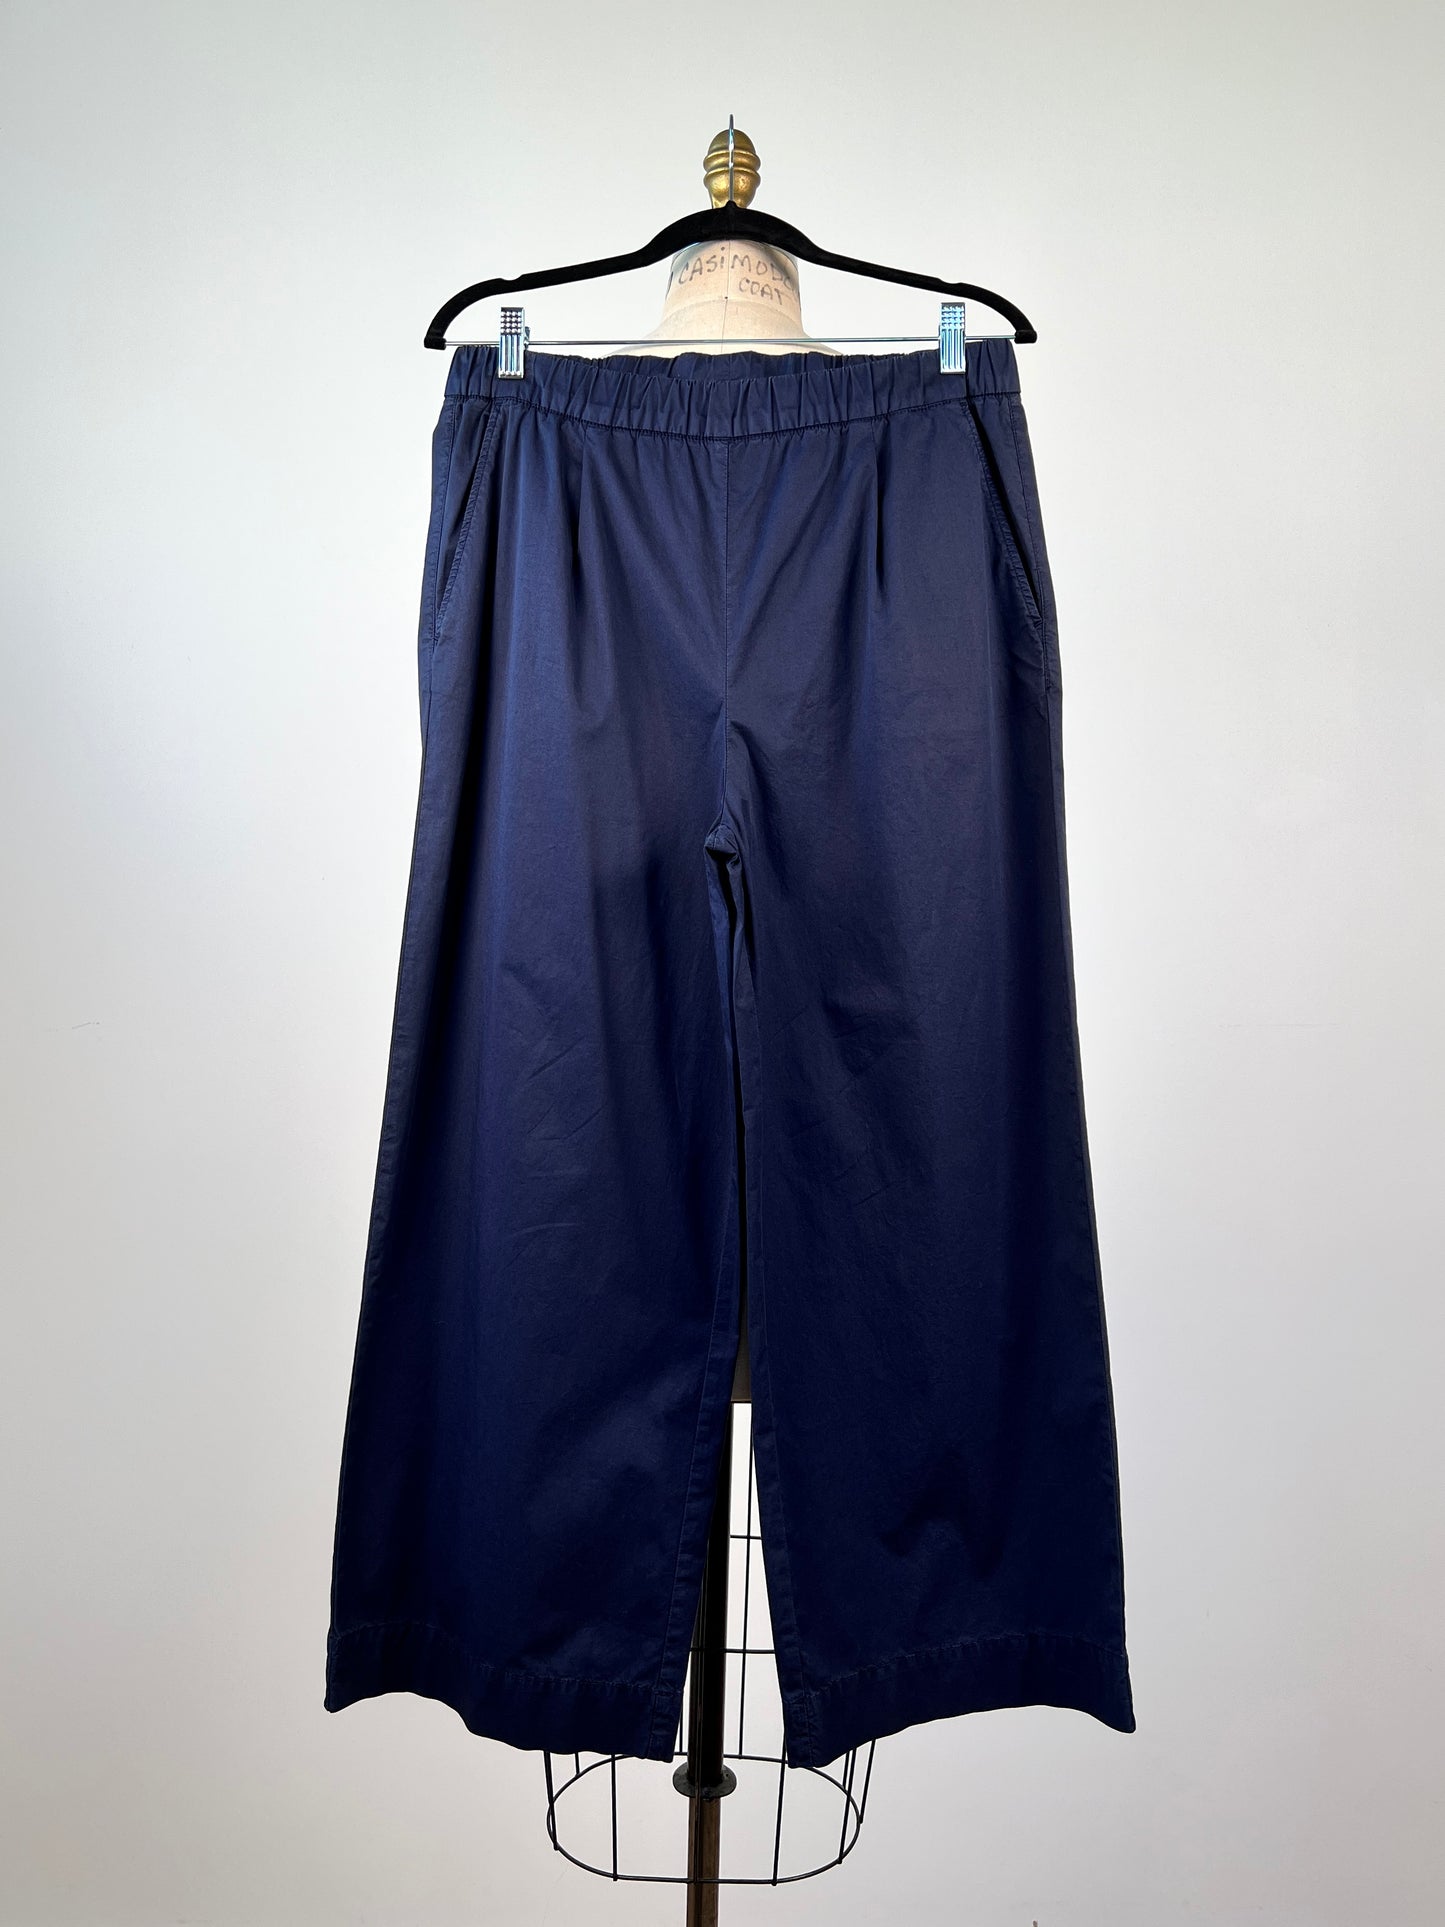 Pantalon marine ample à coupe droite et taille élastique (S)